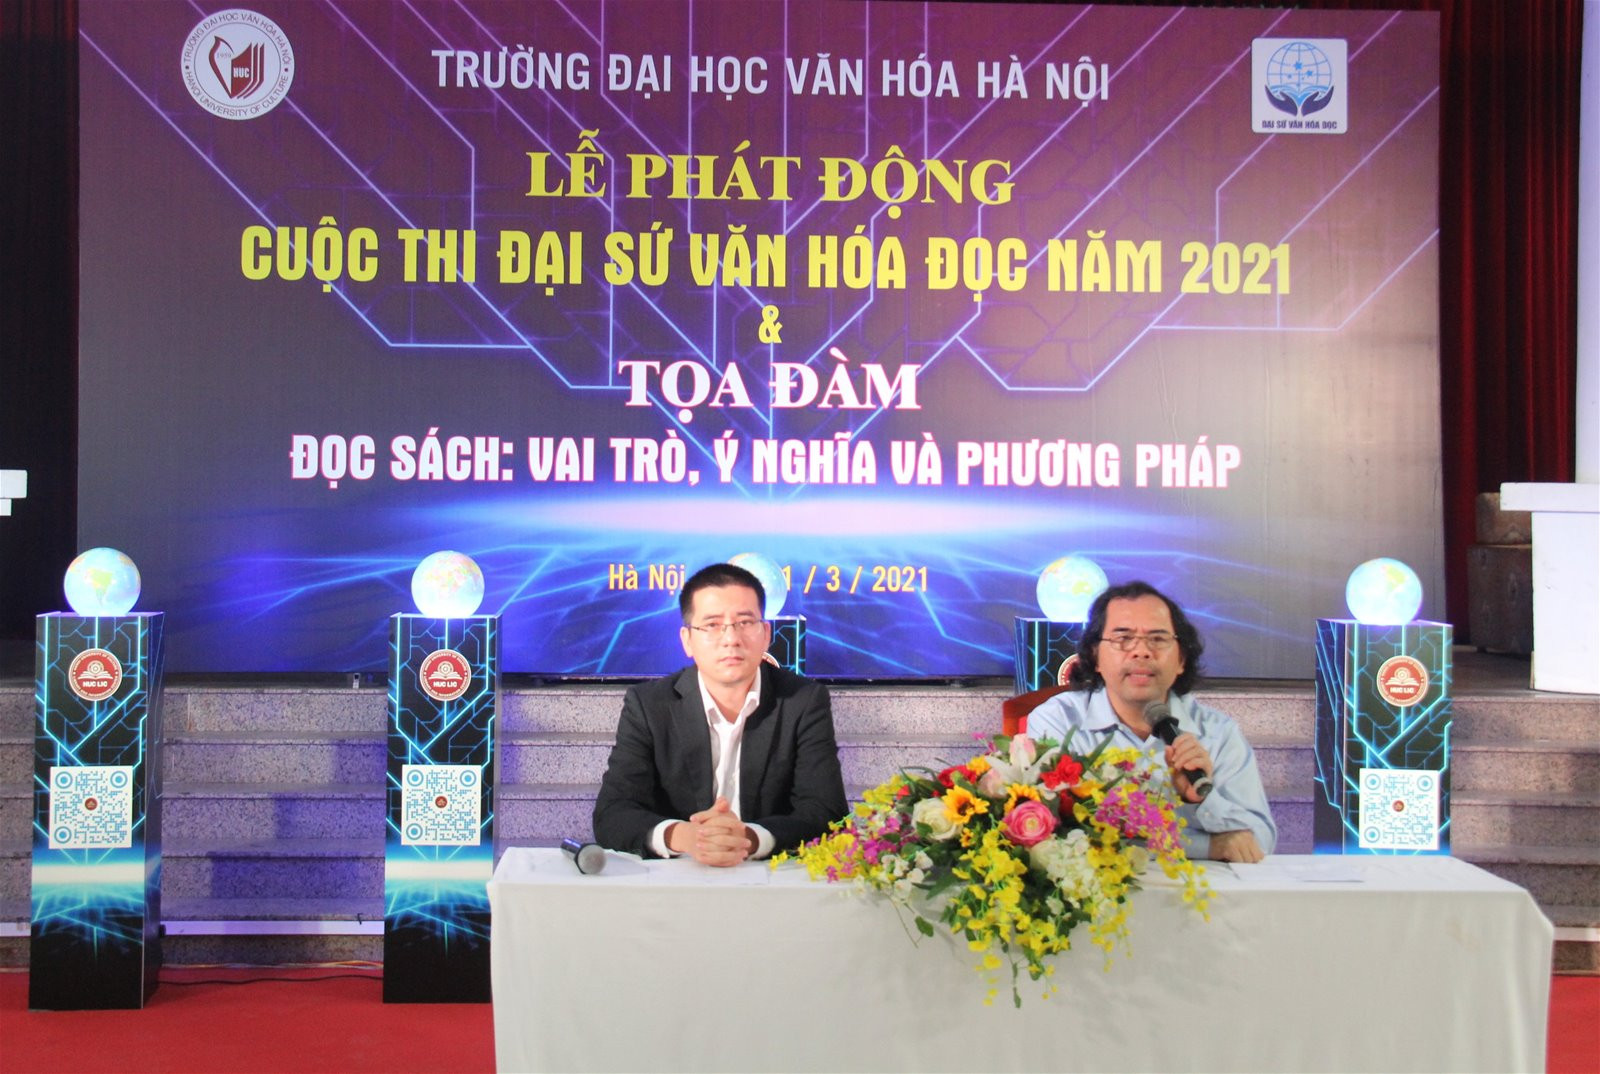 Trường Đại học Văn hóa Hà Nội phát động cuộc thi Đại sứ Văn hóa đọc 2021 - Ảnh 2.